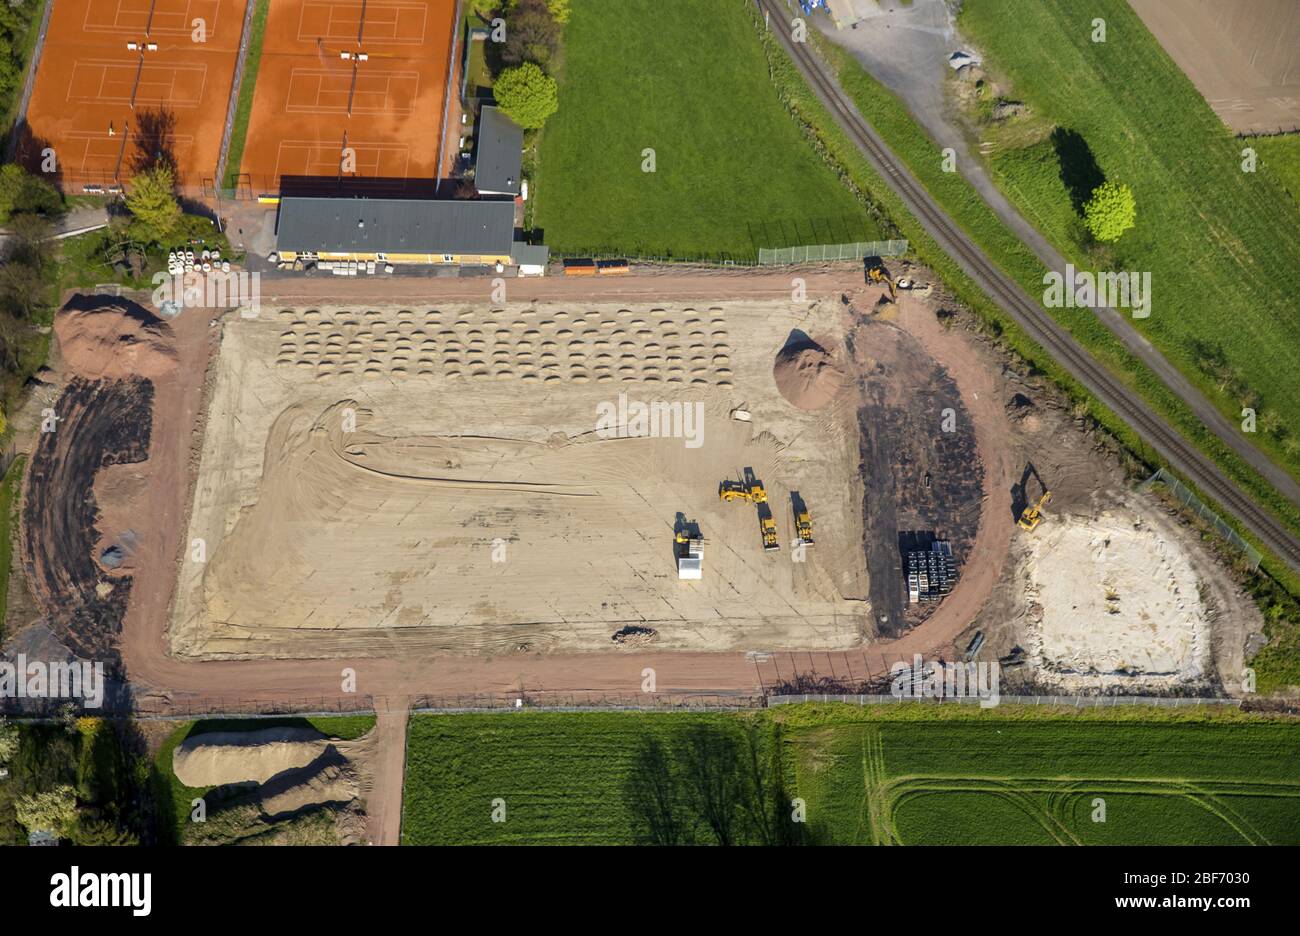 , Baustelle Sportanlage Realschule Mark in Hamm, 21.04.2016, Luftaufnahme , Deutschland, Nordrhein-Westfalen, Ruhrgebiet, Hamm Stockfoto